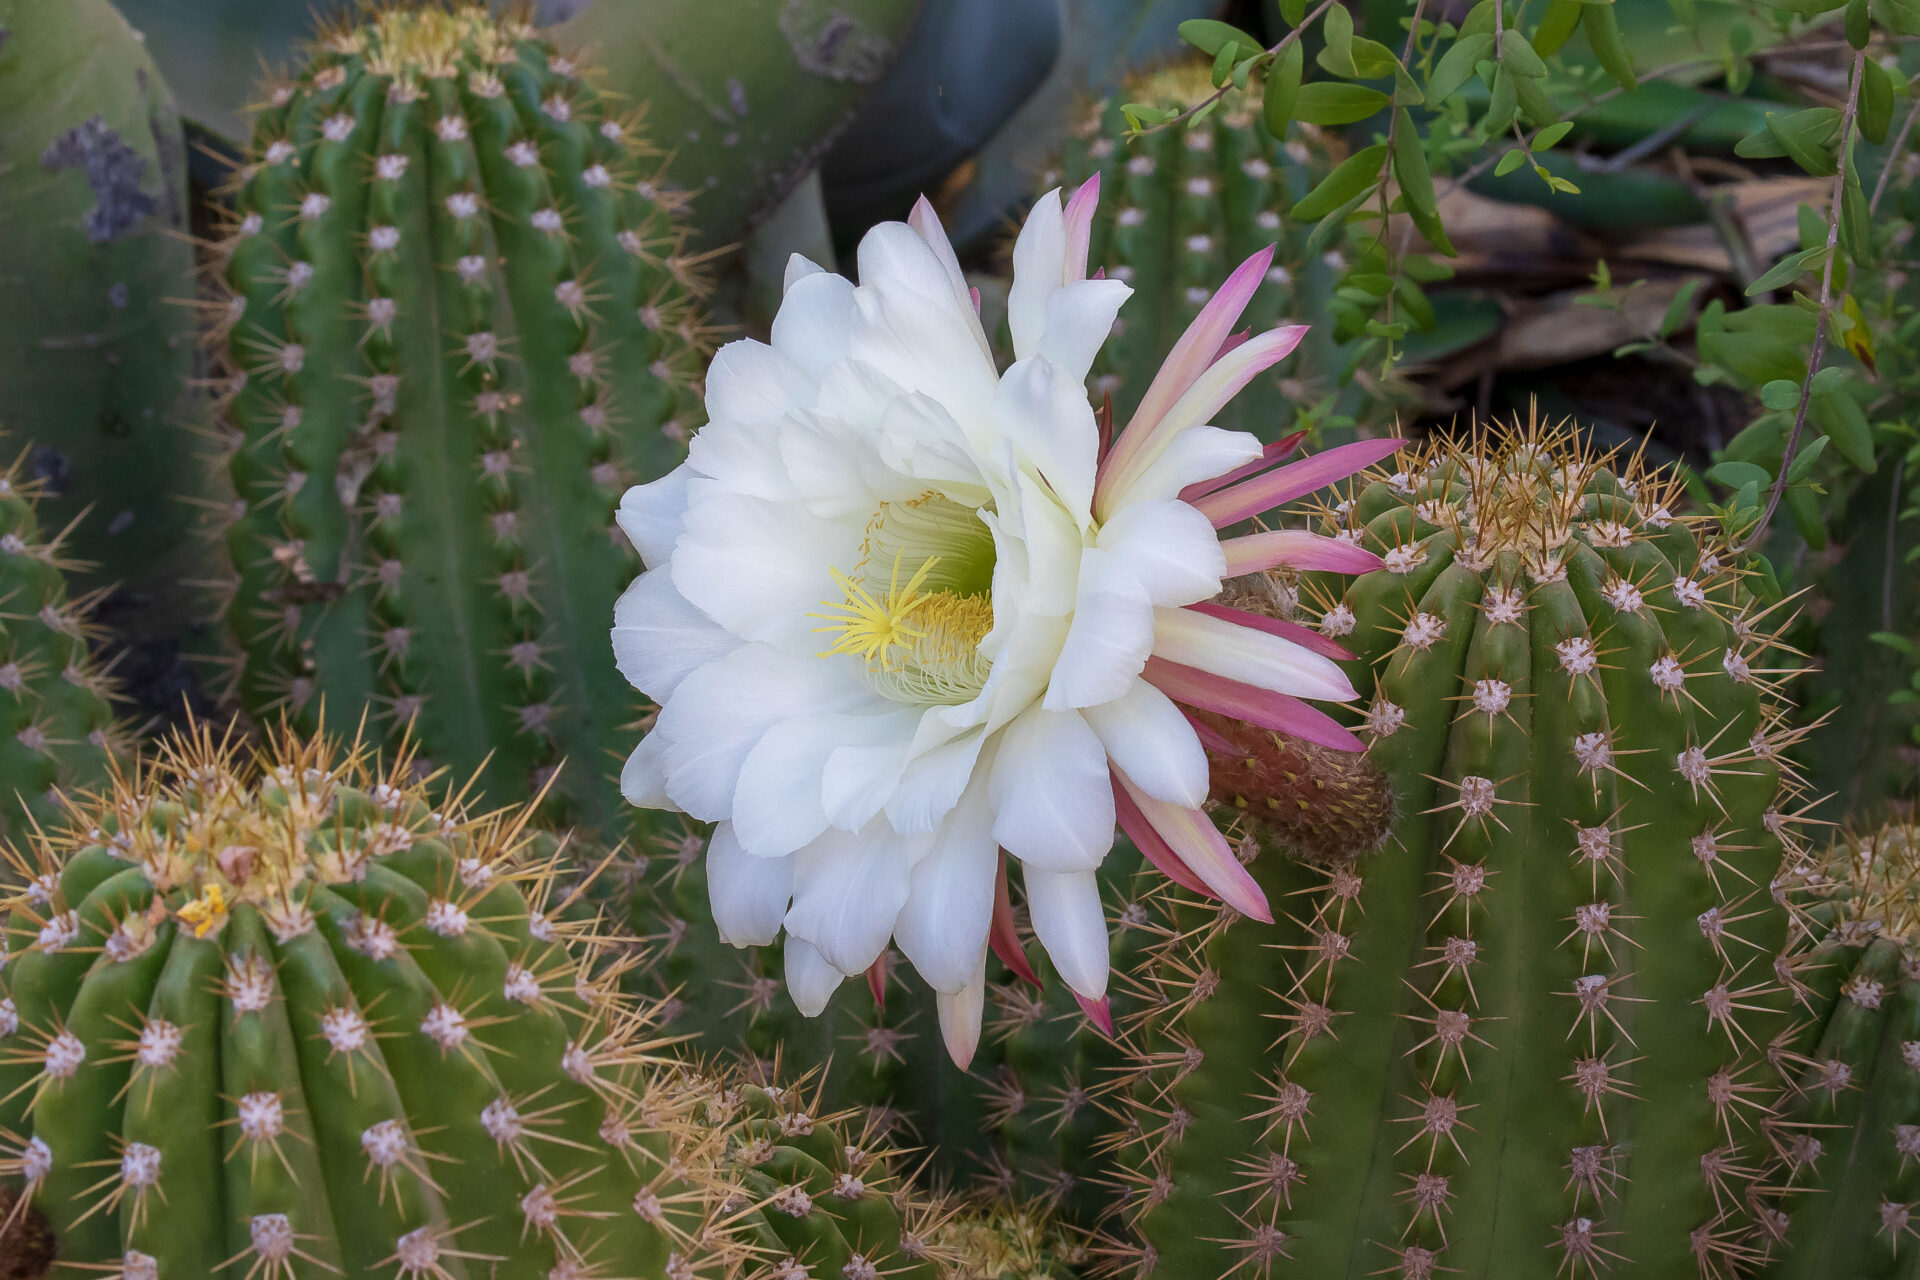 Cactus Blooms in Arizona